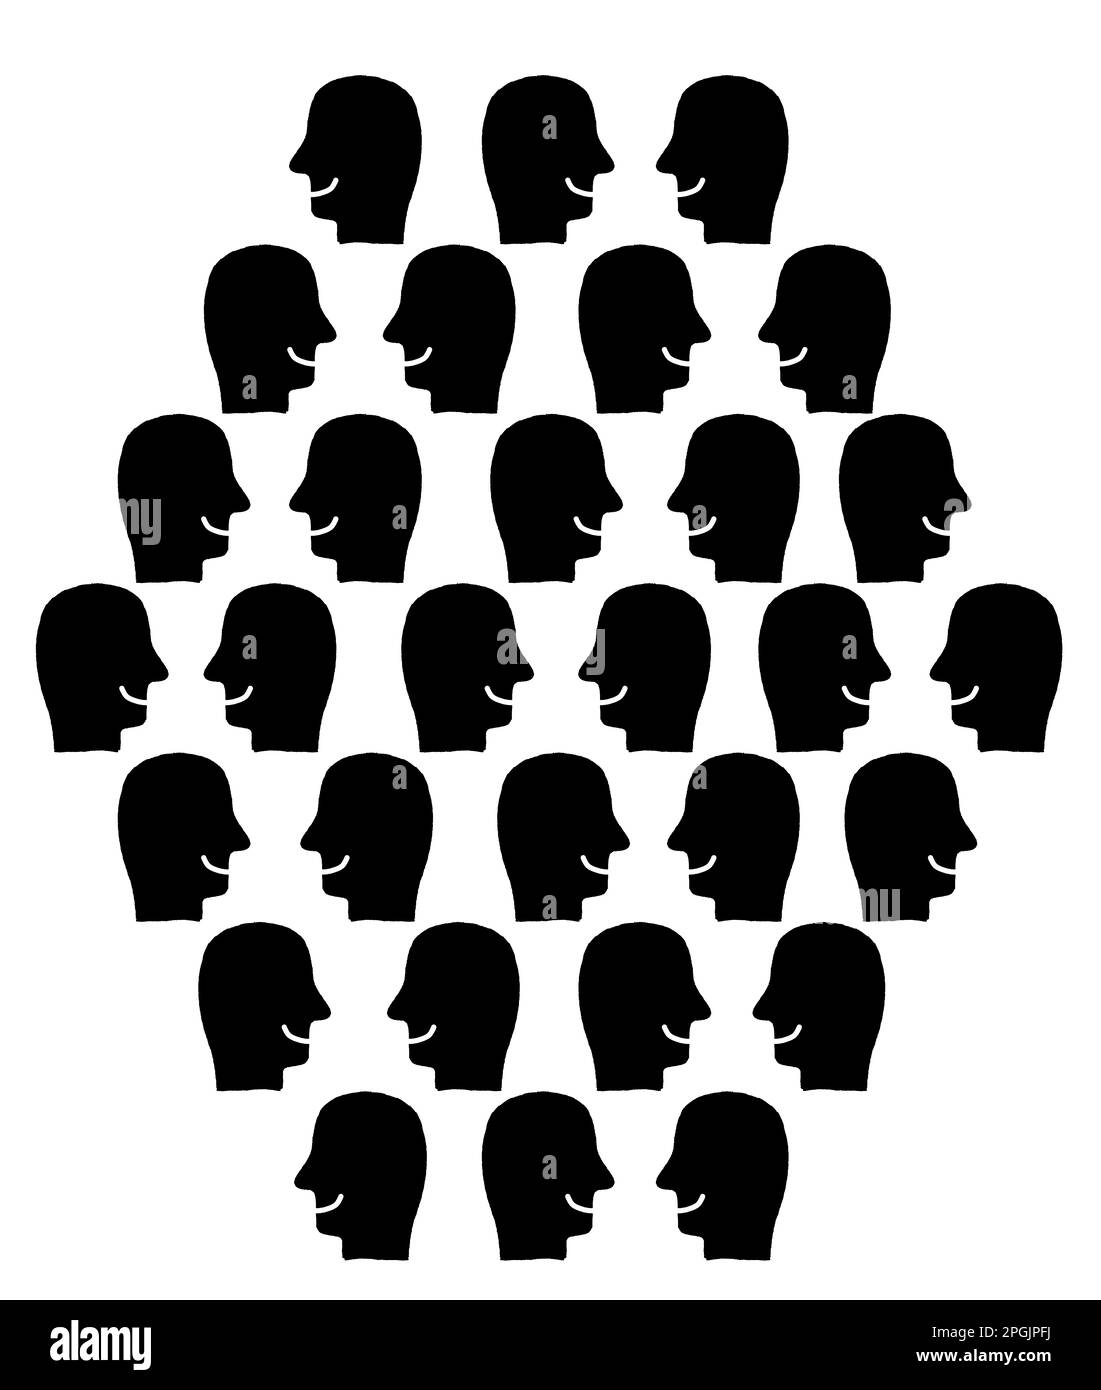 Schwarz-Weiß-Illustration von fröhlichen, plaudernden Menschen, die Seligmans Theorie illustriert, dass glückliche Menschen immer gesprächig sind Stockfoto